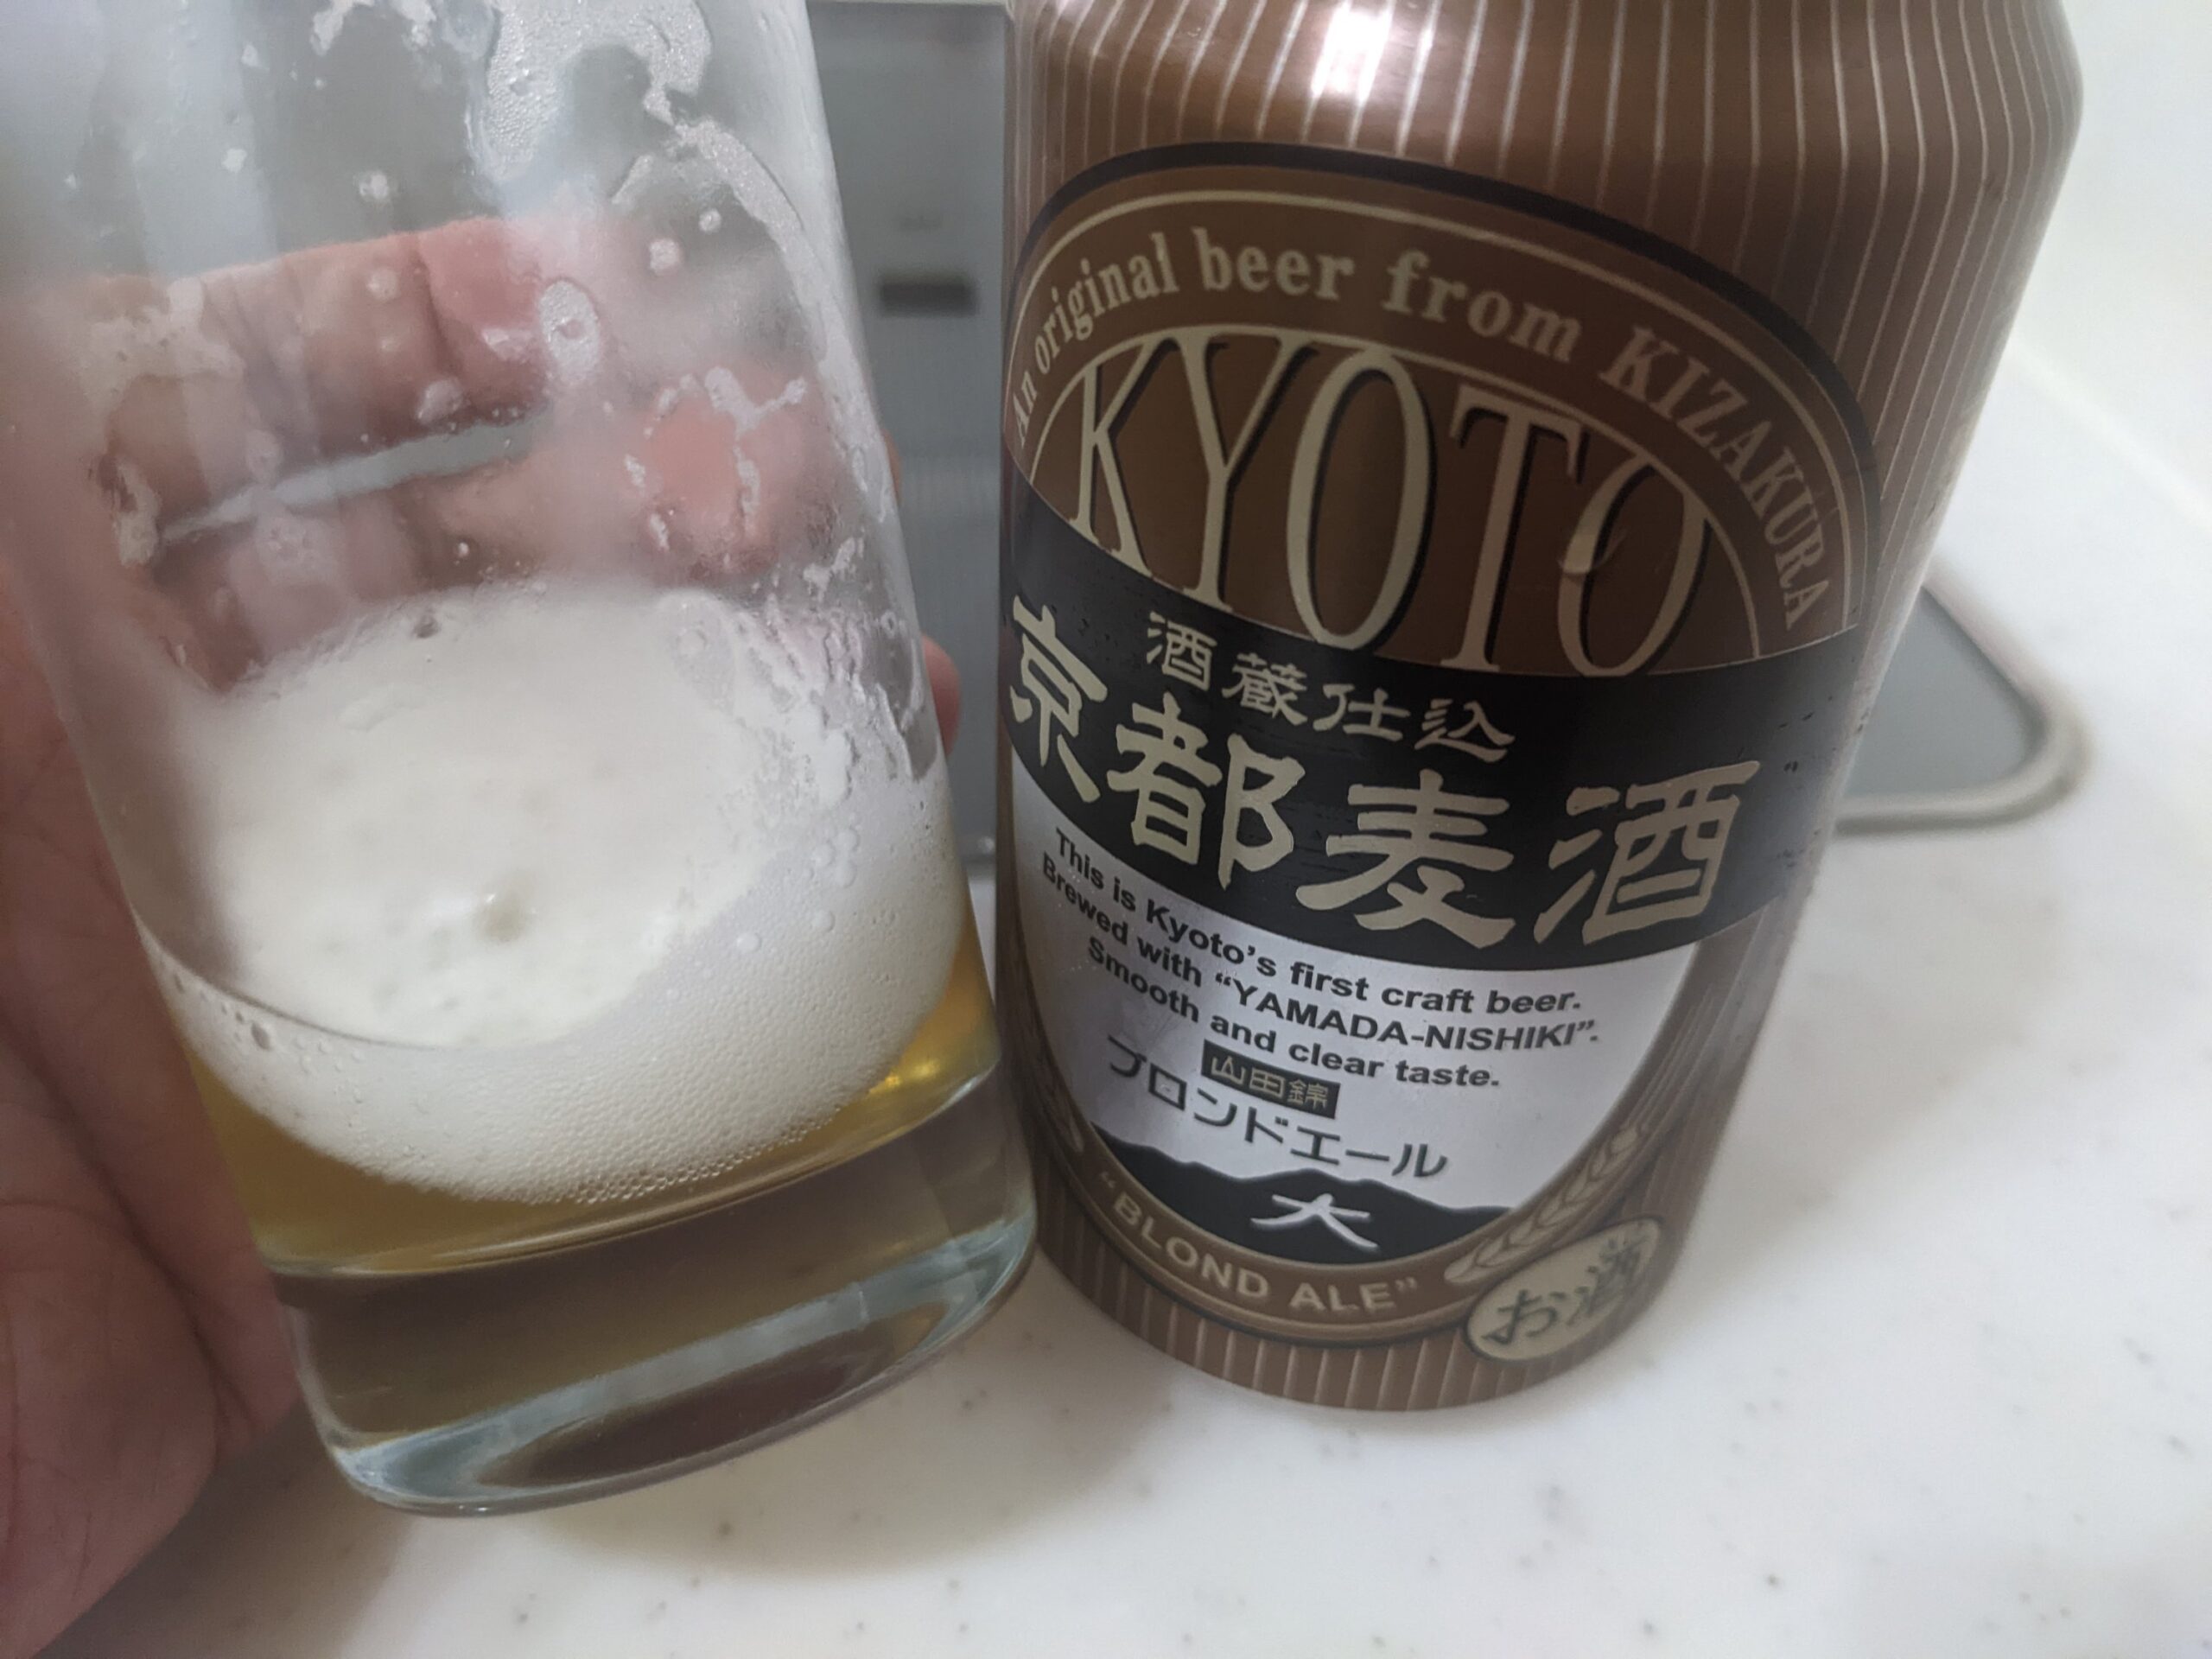 残り1割程のグラスに残った「京都麦酒ブロンドエール」